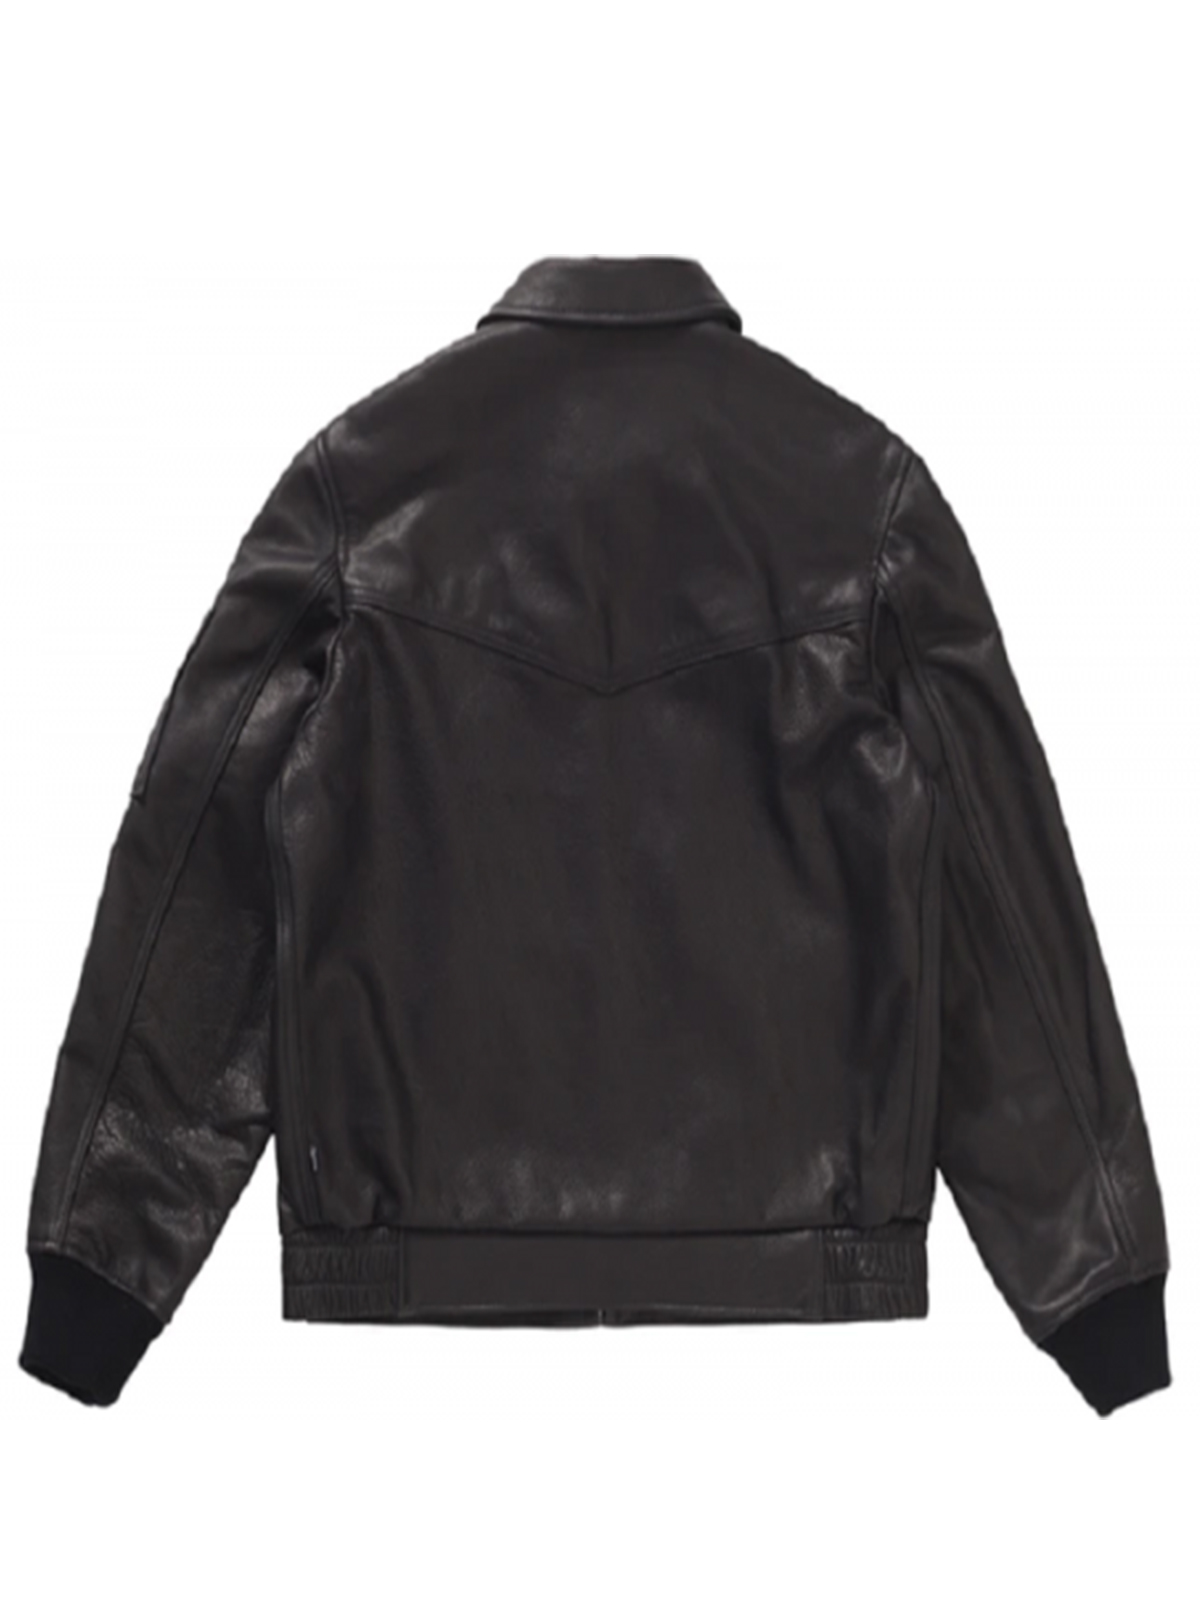 Supreme Schott Black Tanker Leather Jacket